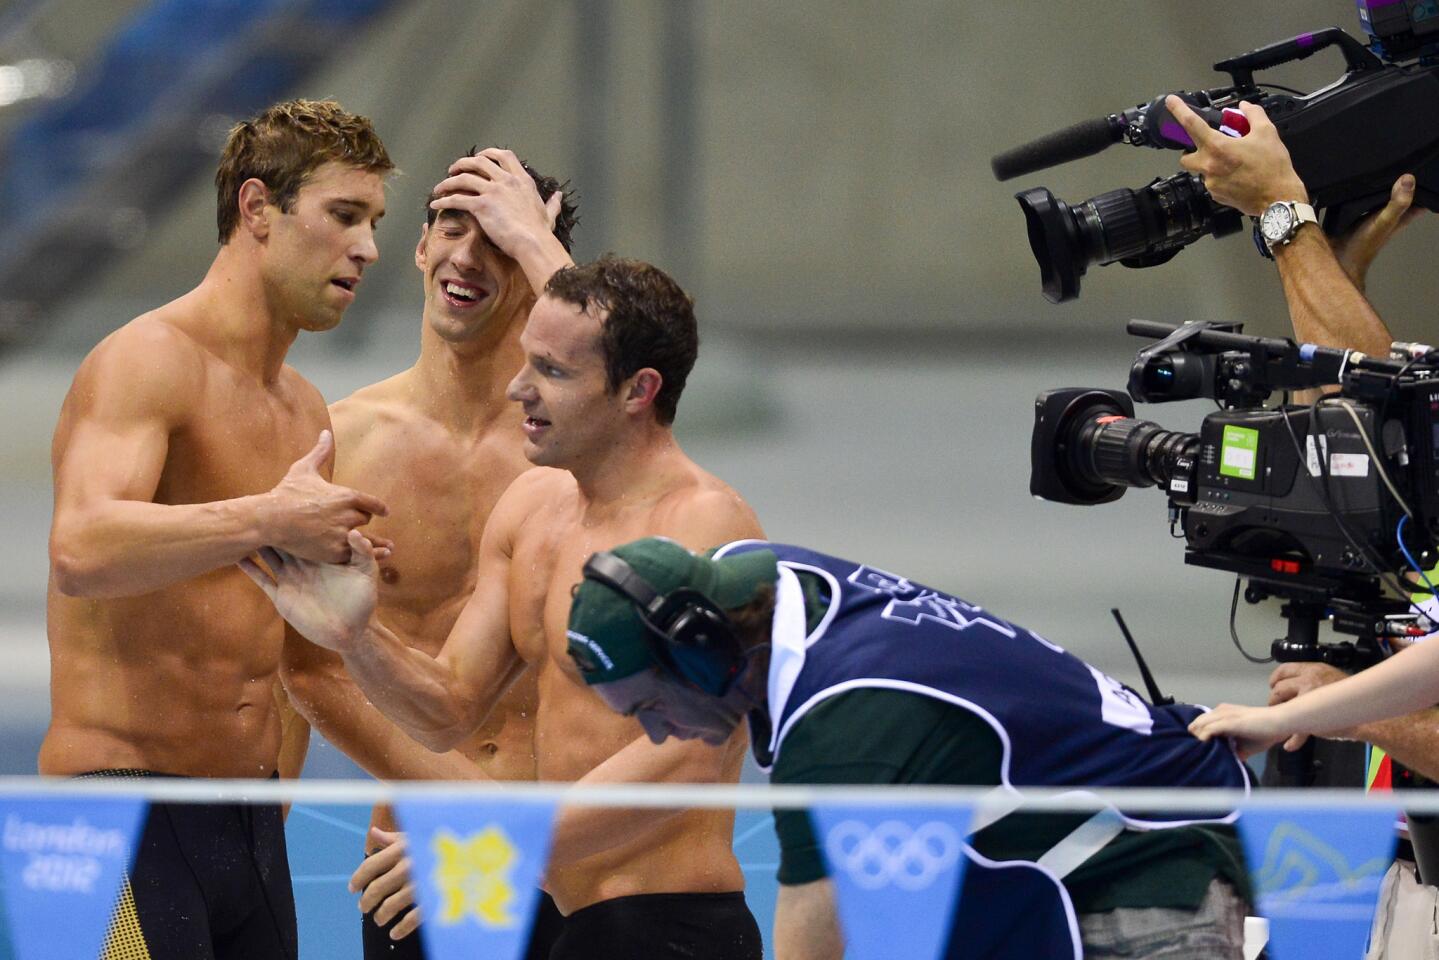 Matthew Grevers, Michael Phelps and Brendan Hansen